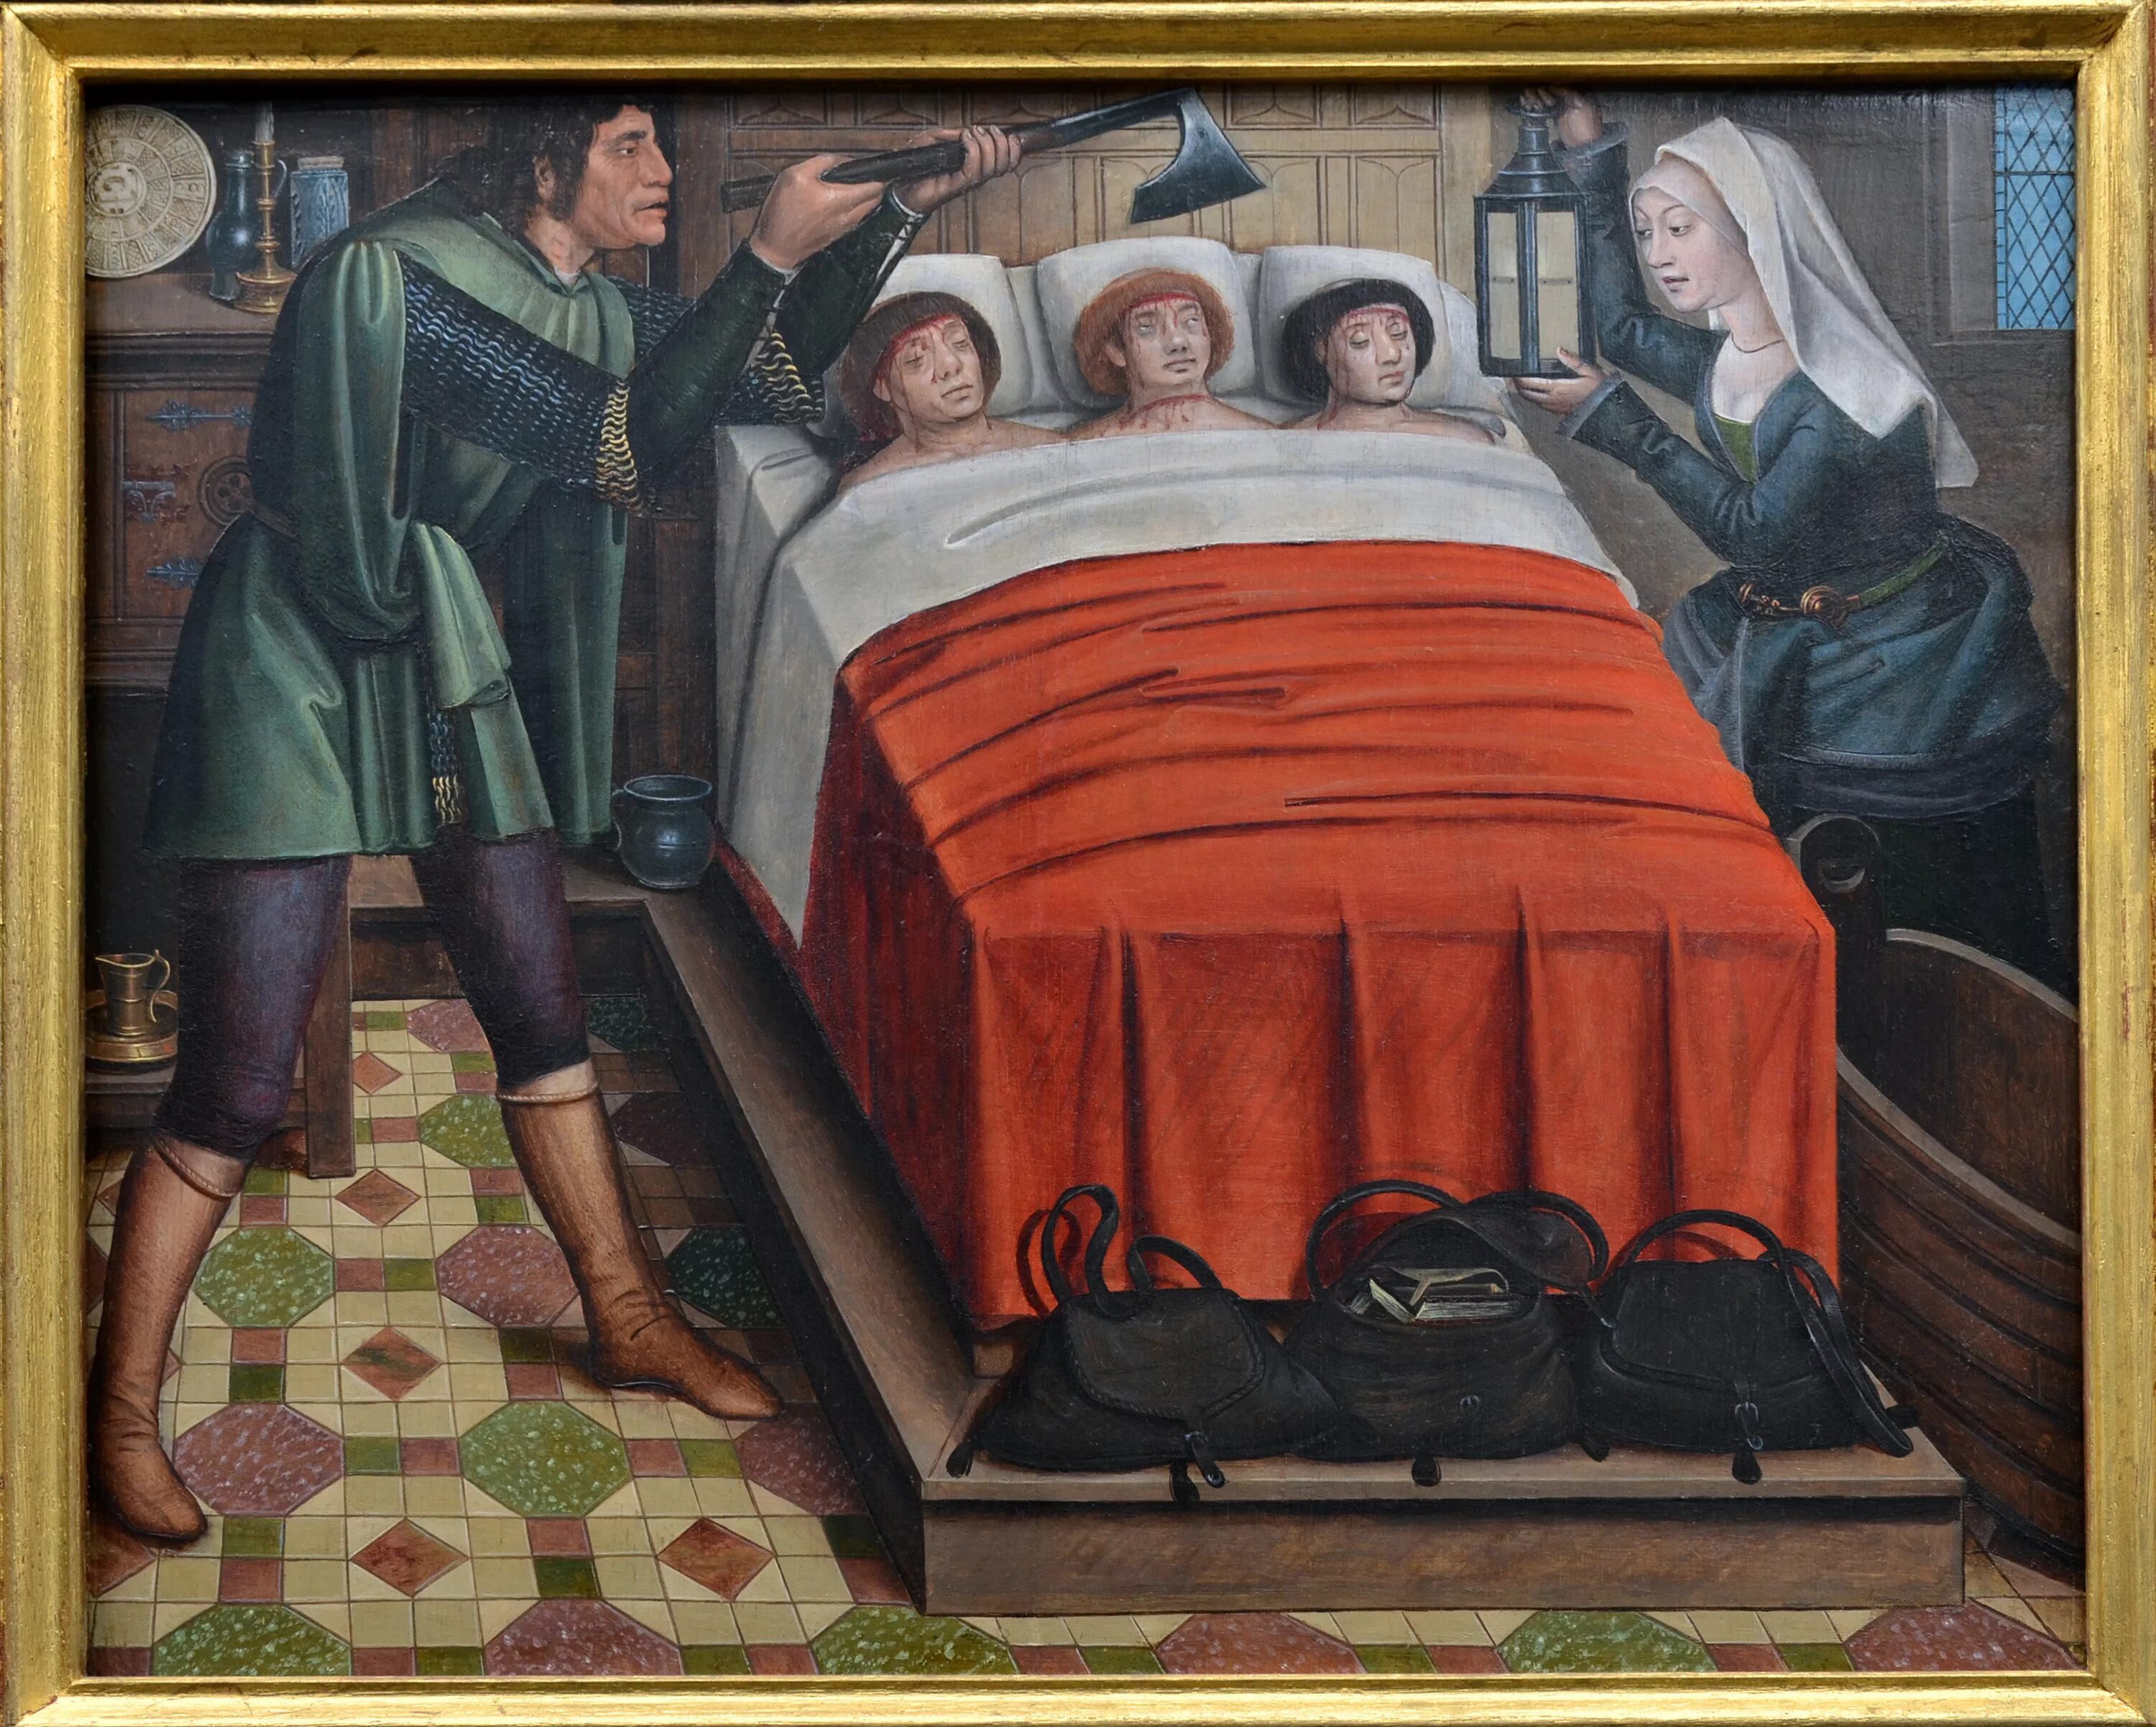 Кровать в средневековье. Средневековая картина кровати. Детская кровать средневековье 15 век. Омерзительное средневековье. Произведения 15 века